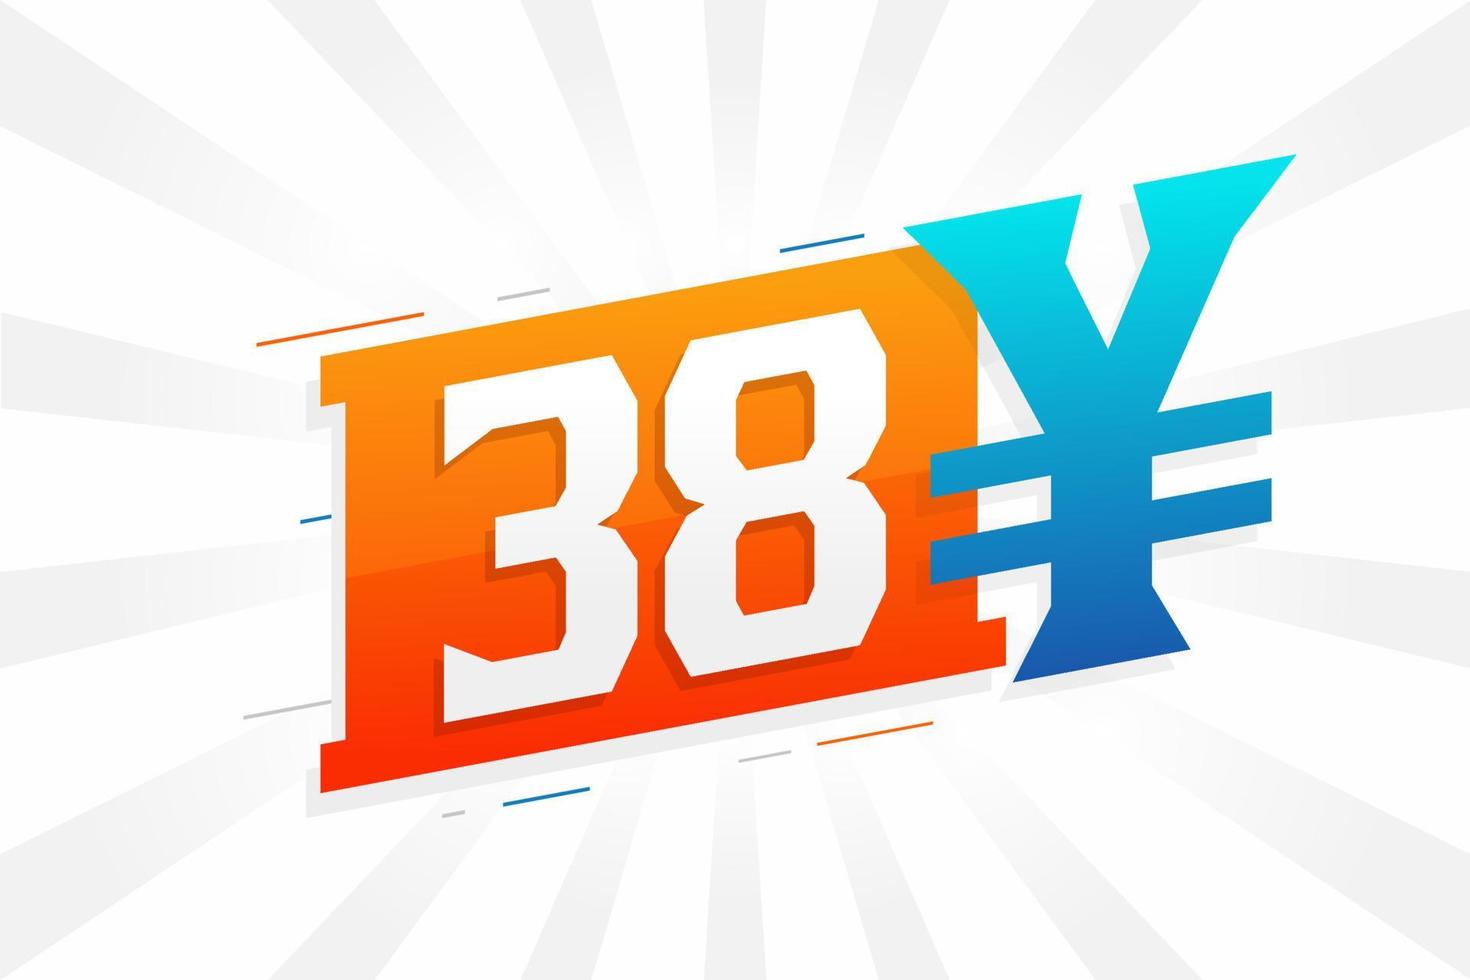 Symbole de texte vectoriel de la monnaie chinoise de 38 yuans. 38 yen monnaie japonaise vecteur de stock d'argent